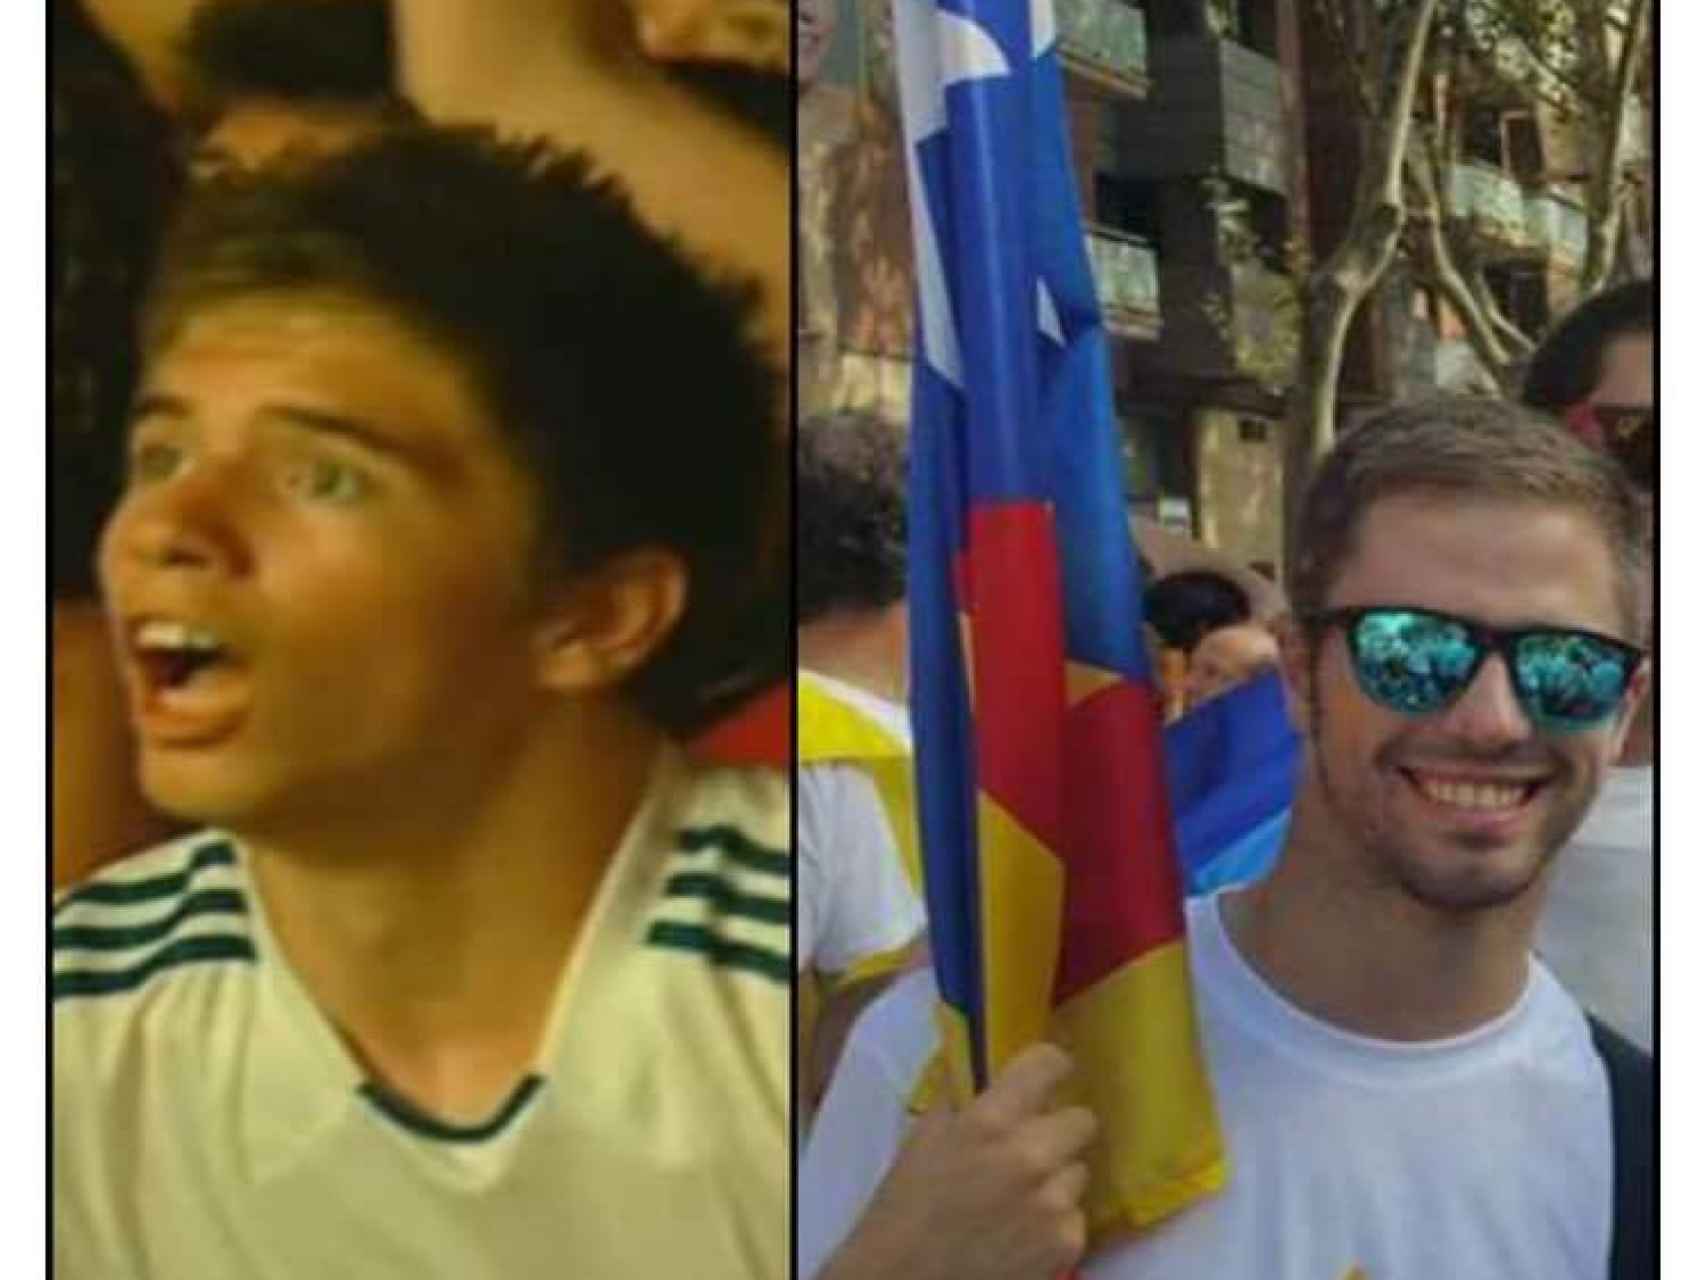 7 años de diferencia entre la foto de la izquierda, cuando Sergio era forofo de La Roja, y la derecha, ya reconocido independentista